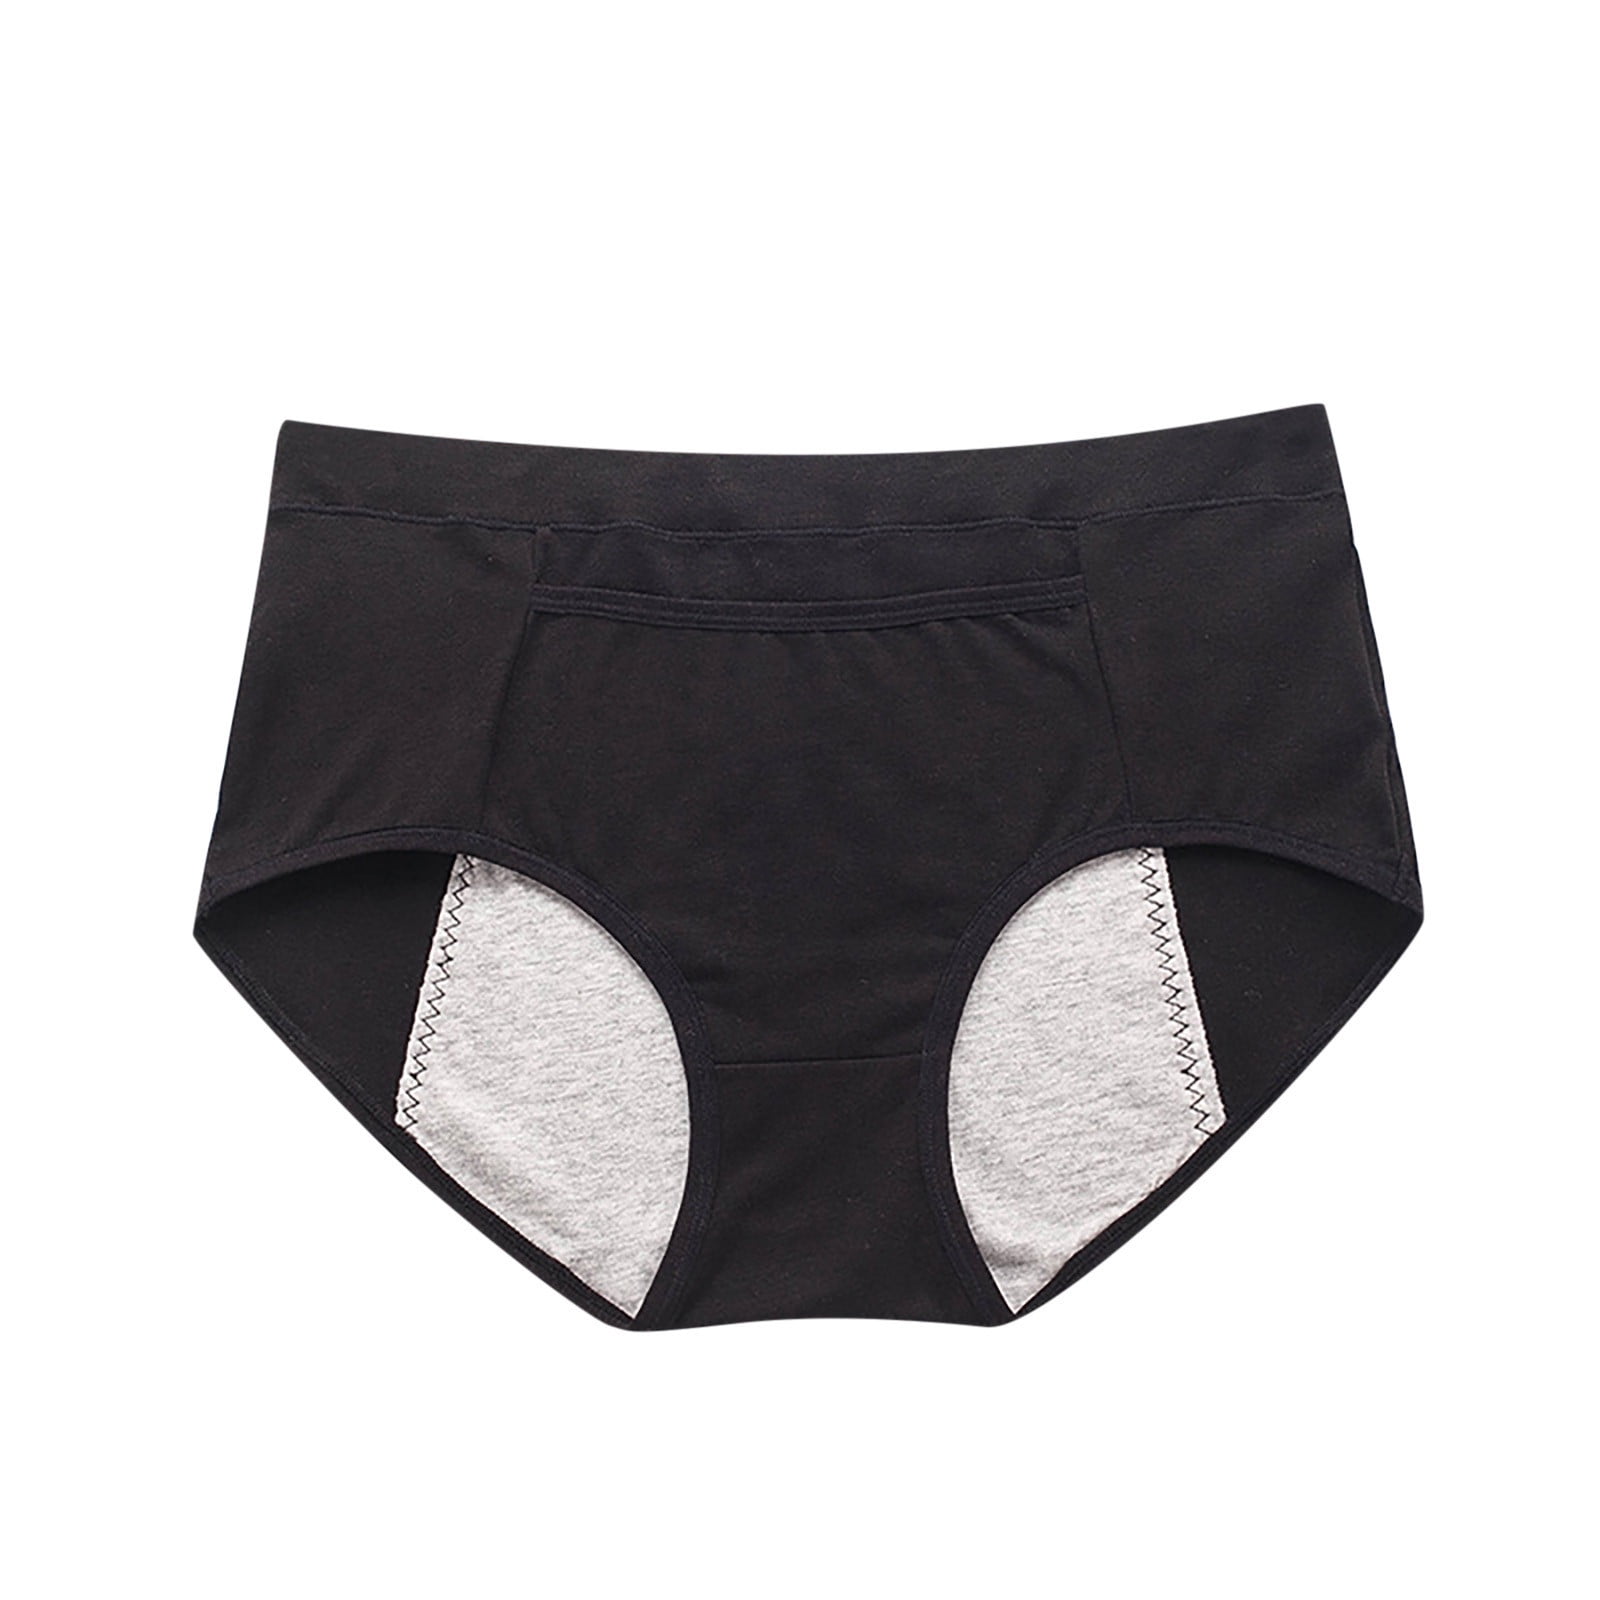 Speax by Thinx Hi-Waist Incontinence Underwear for Women, Washable  Incontinence Underwear Women, Postpartum Underwear Feminine Care, Black,  Medium